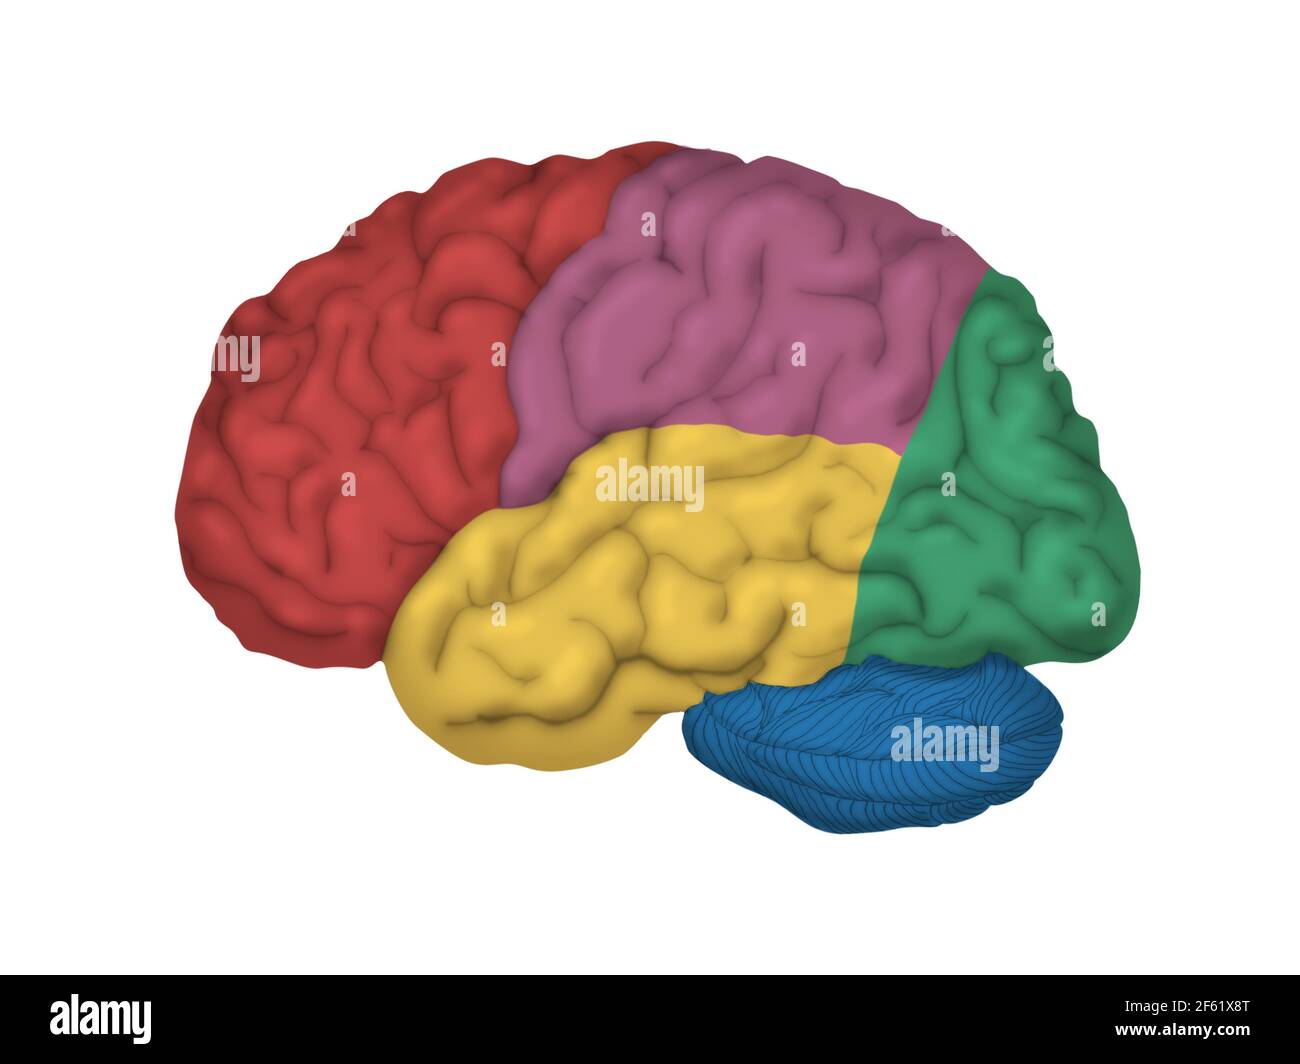 Cervello umano, vista laterale Foto Stock